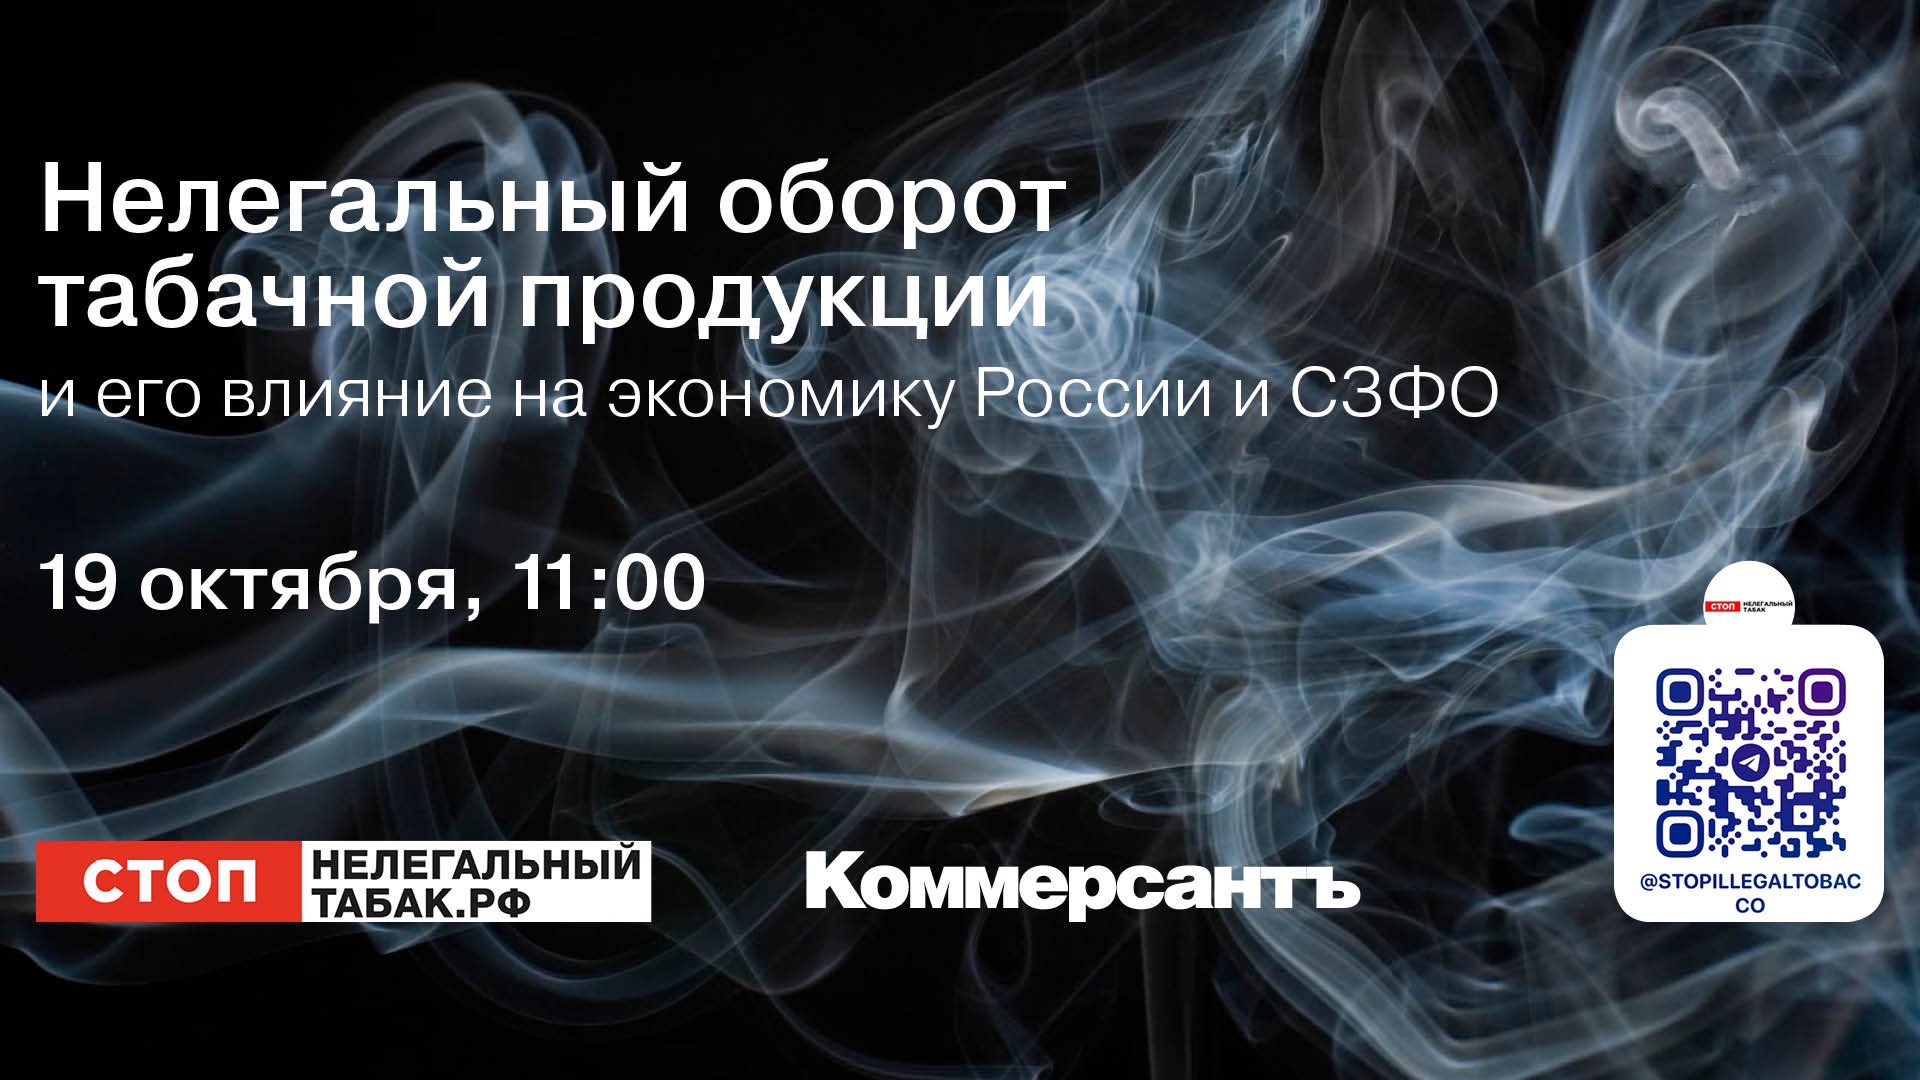 Представители Санкт-Петербурга и СЗФО обсудят способы борьбы с нелегальным оборотом табака – фото